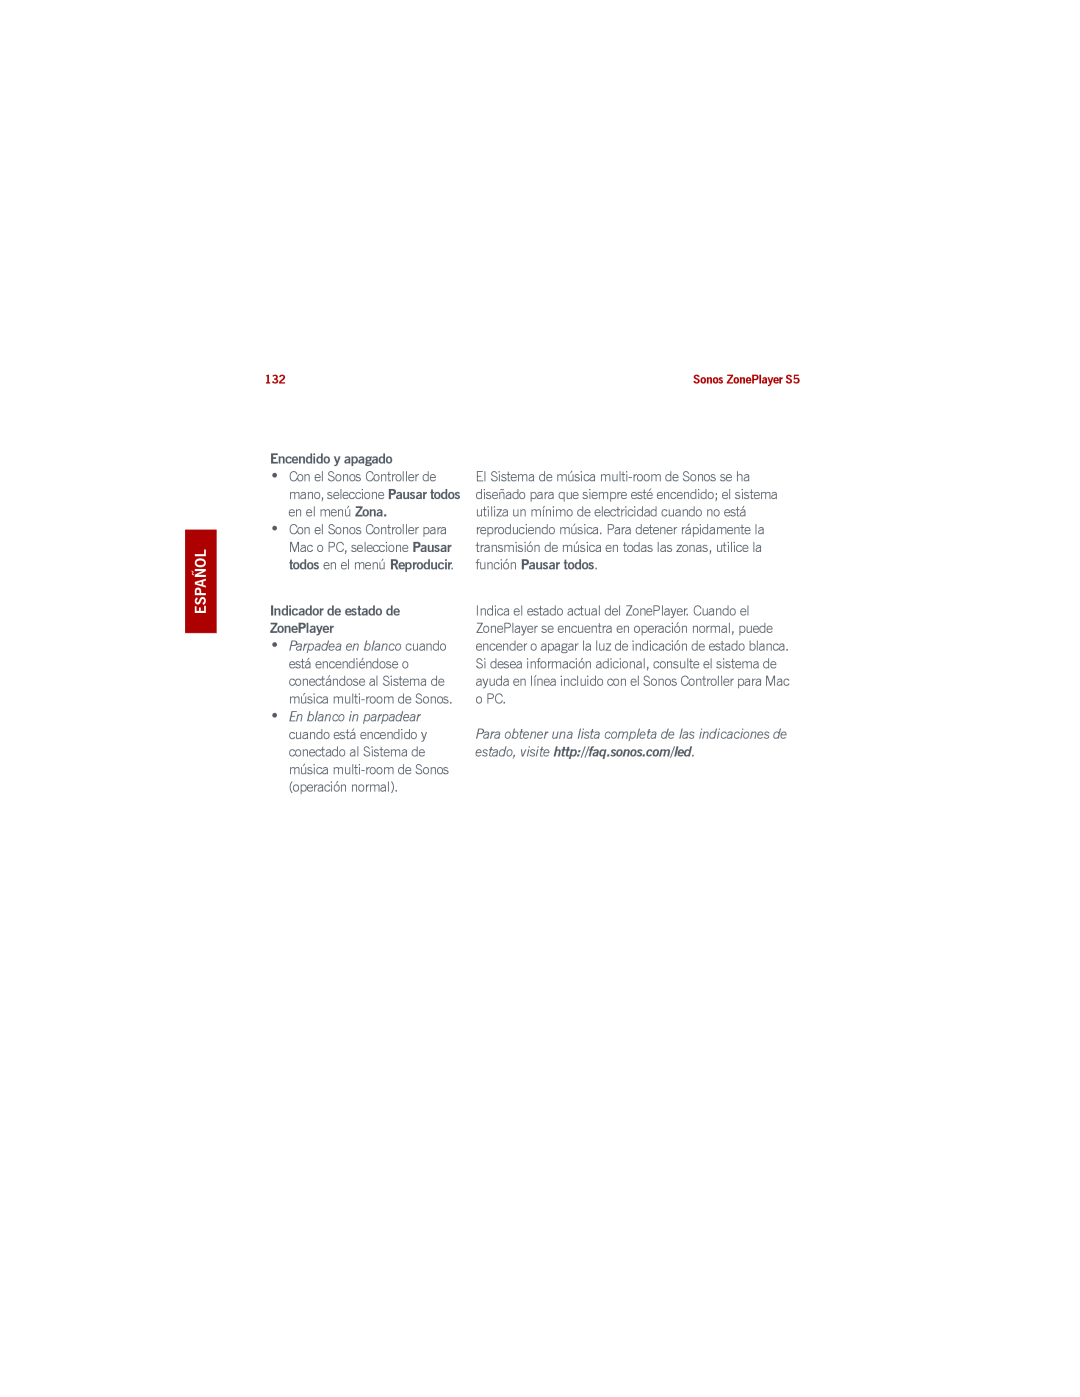 Sonos S5 manual Svenska Nederlands Español, Encendido y apagado, Indicador de estado de ZonePlayer 